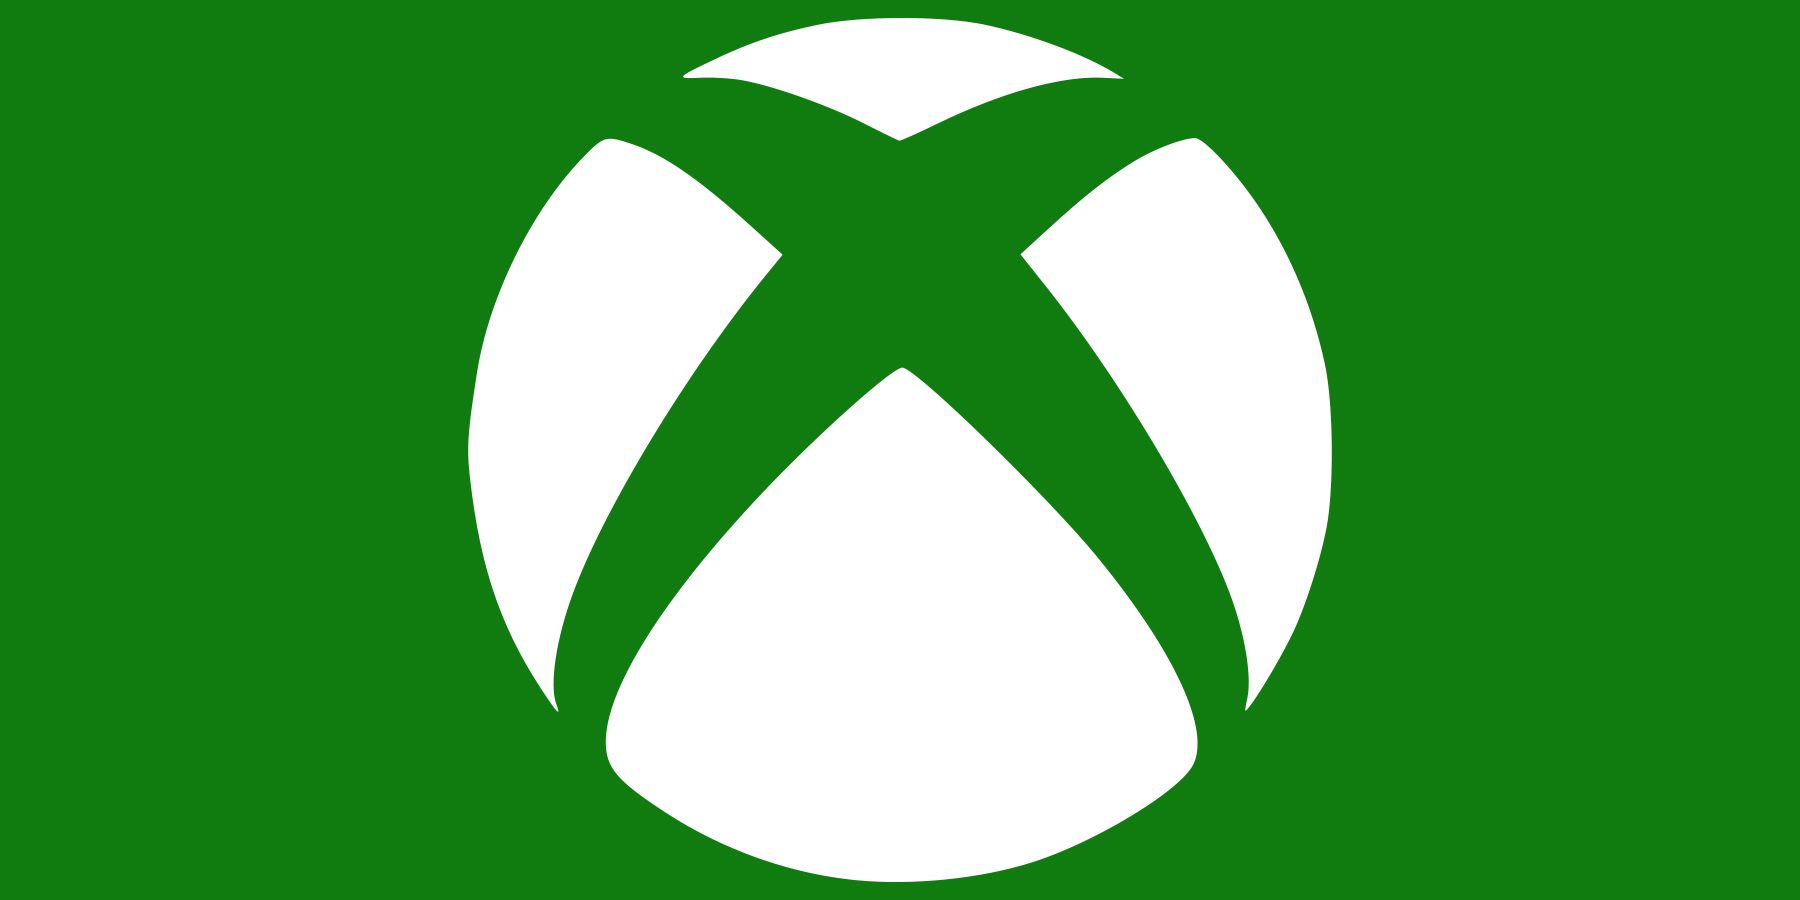 white Xbox logo emblem on dark green background